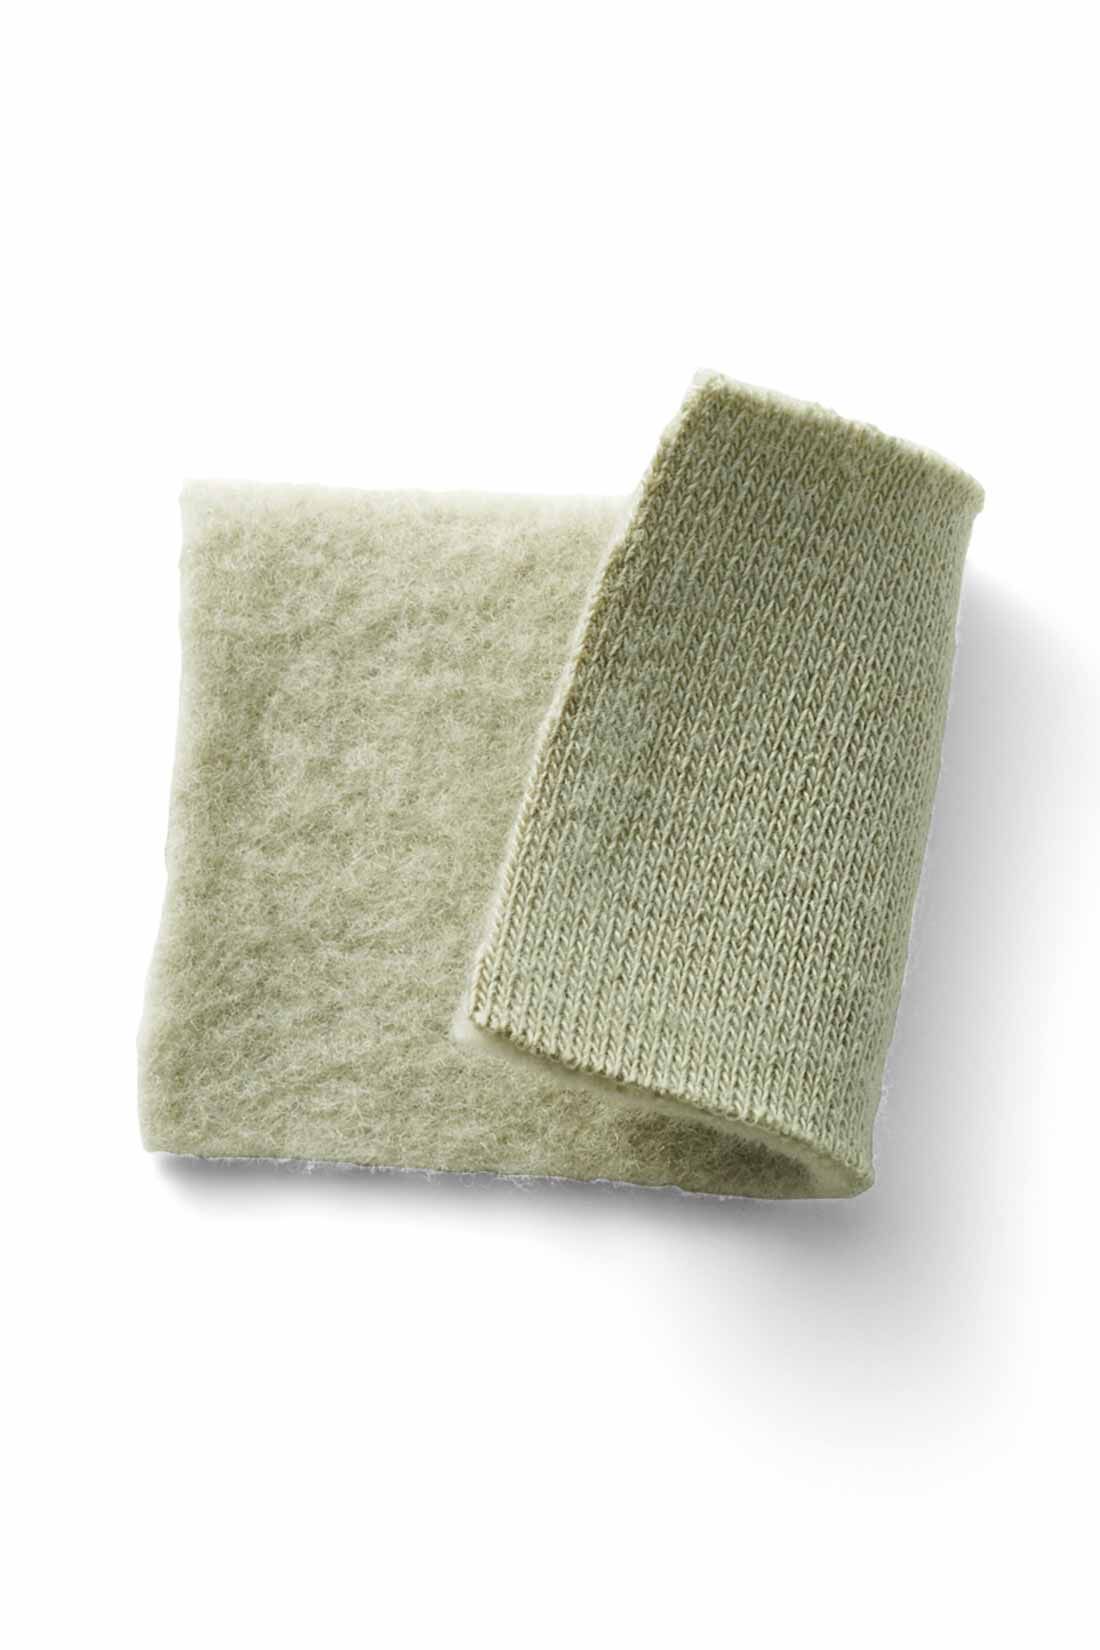 IEDIT[イディット]　裏起毛スウェット素材の大人きれいめロング丈ワンピース|肌を暖かく包み込む、伸びやかな綿混の裏起毛カットソー。